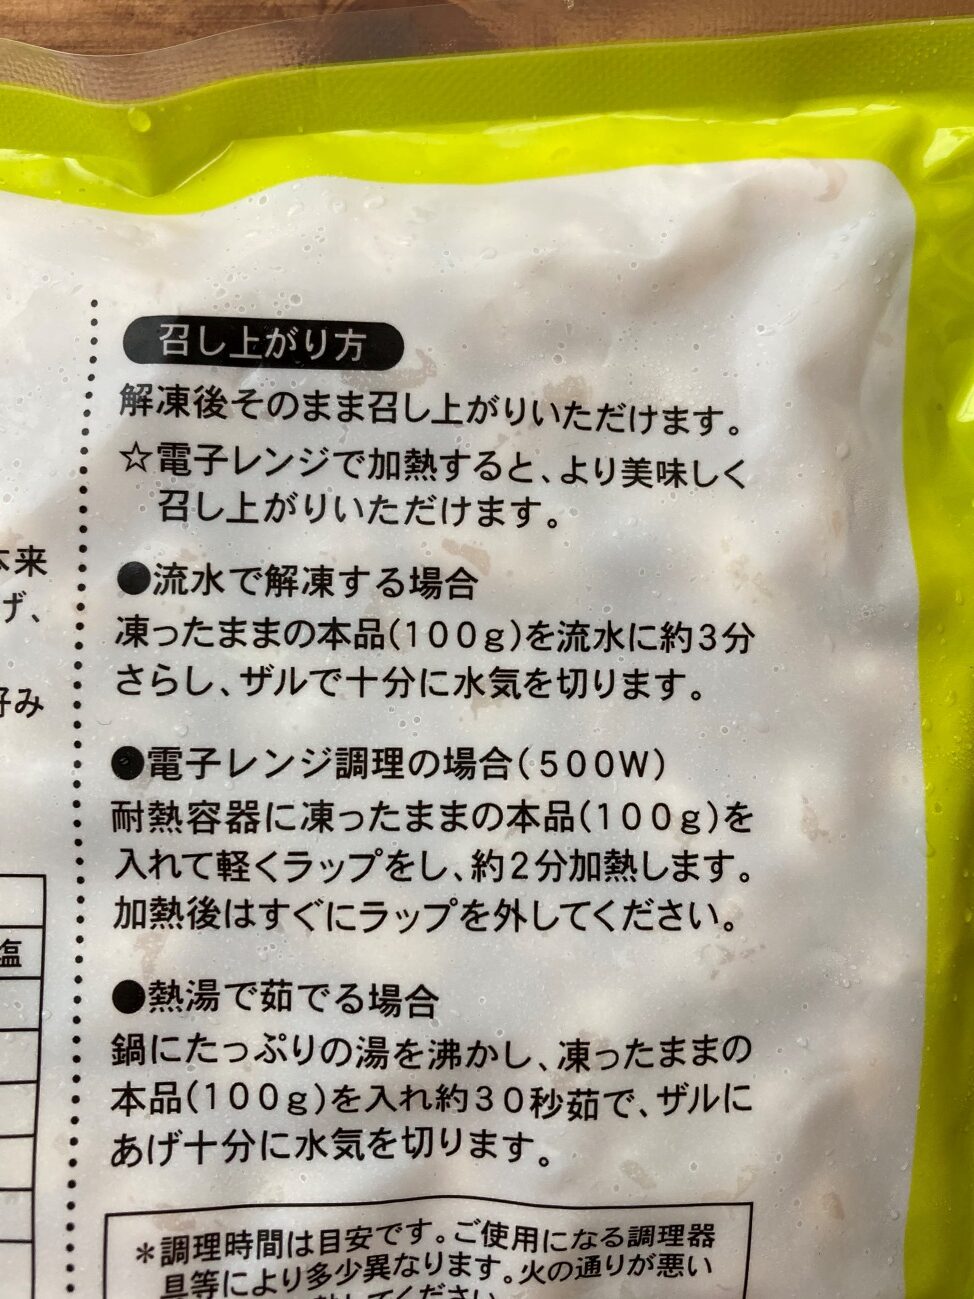 業務スーパーの冷凍ゆで大豆のパッケージに記載されている召し上がり方